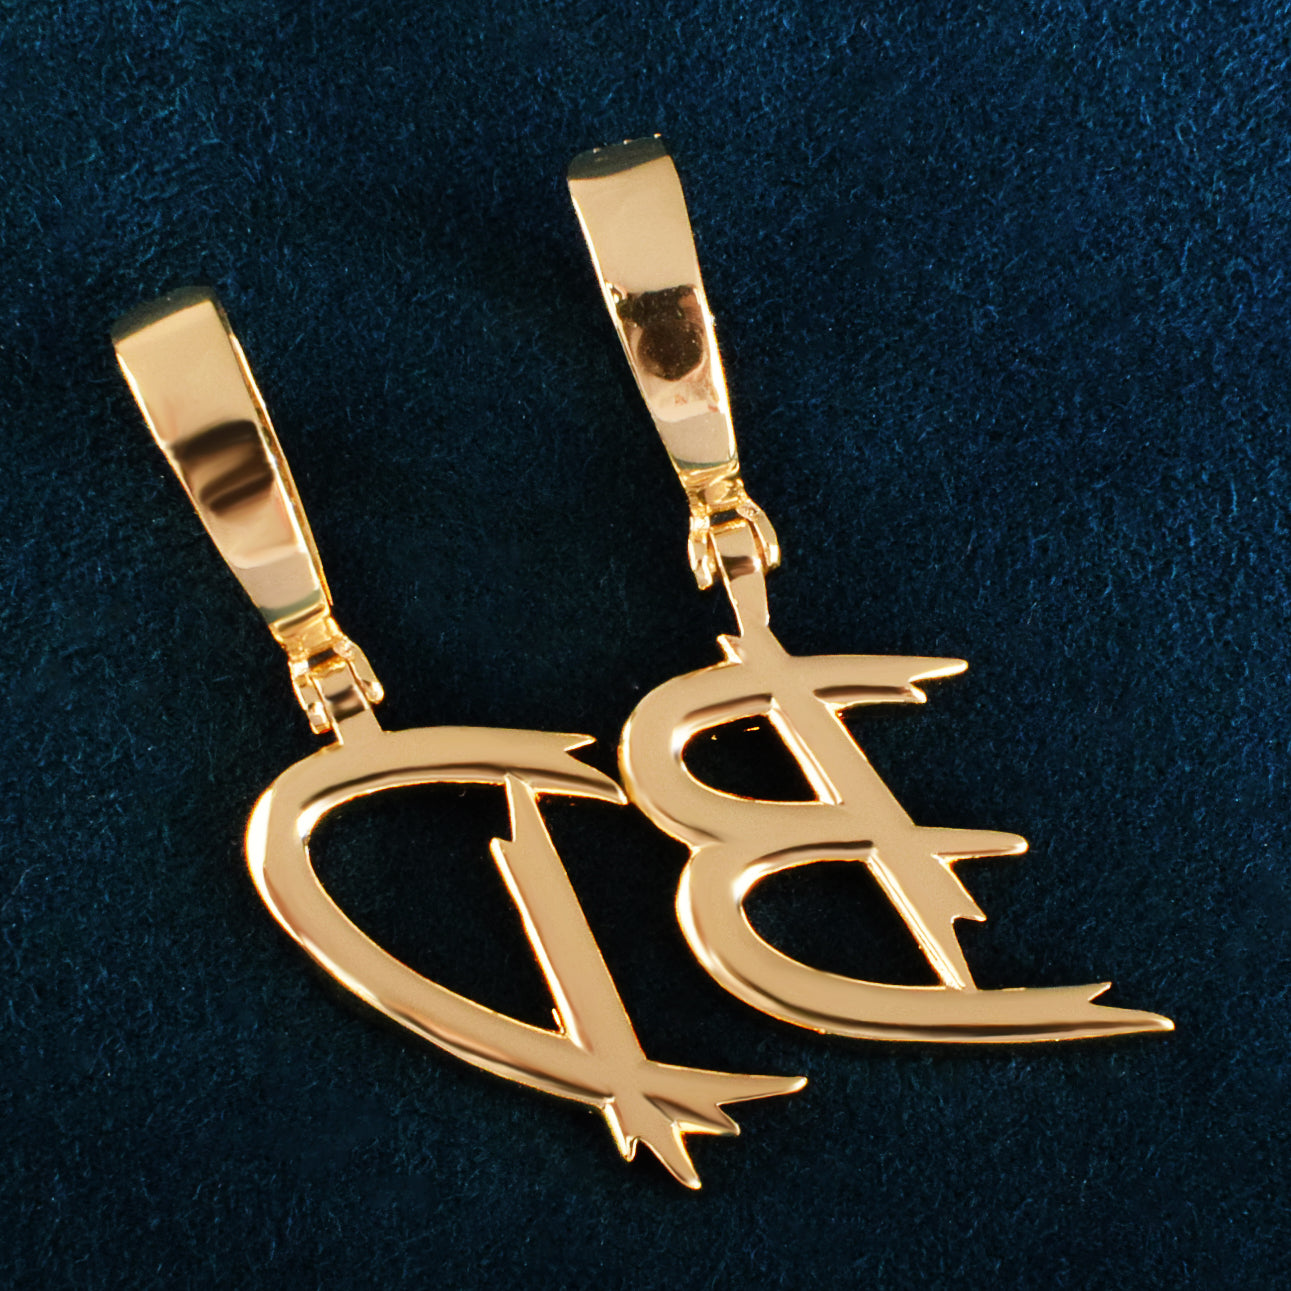 Single Cursive Letter Pendant Necklace